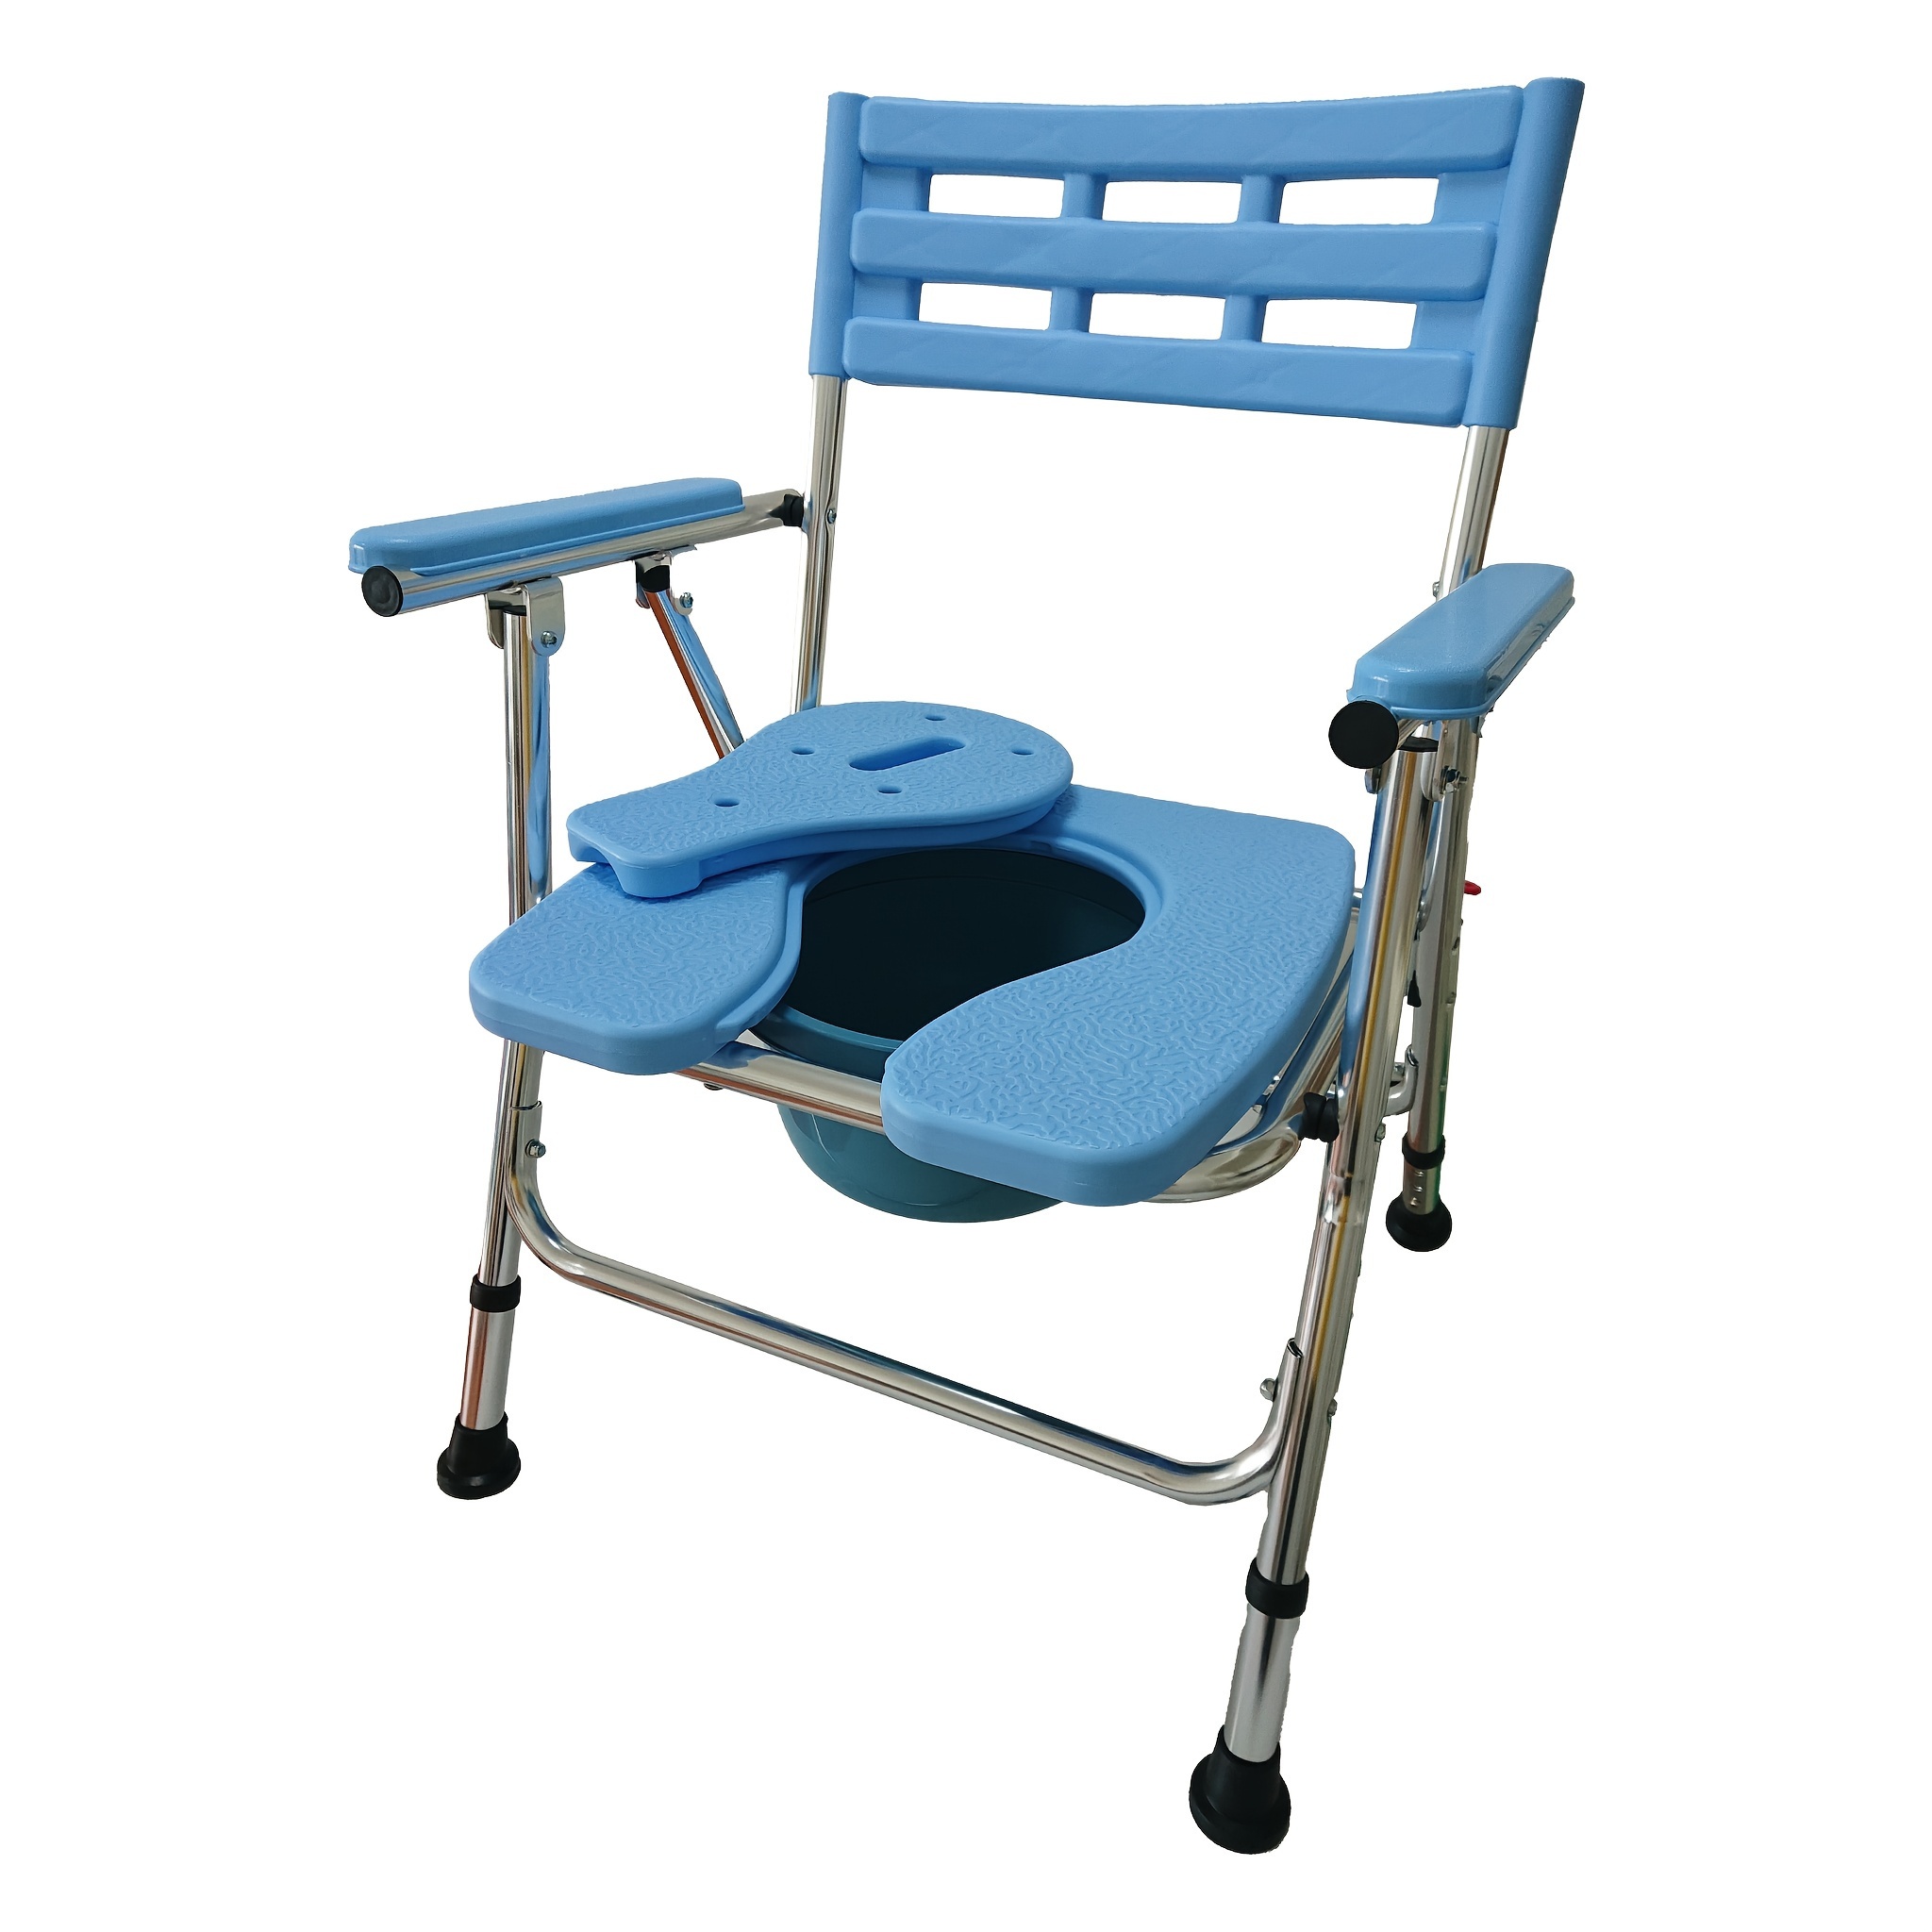  Medokare Silla de ducha de alta calidad para ducha interior, silla  de baño y asiento de ducha de grado médico para personas mayores, ancianos,  discapacitados y discapacitados, banco de soporte 